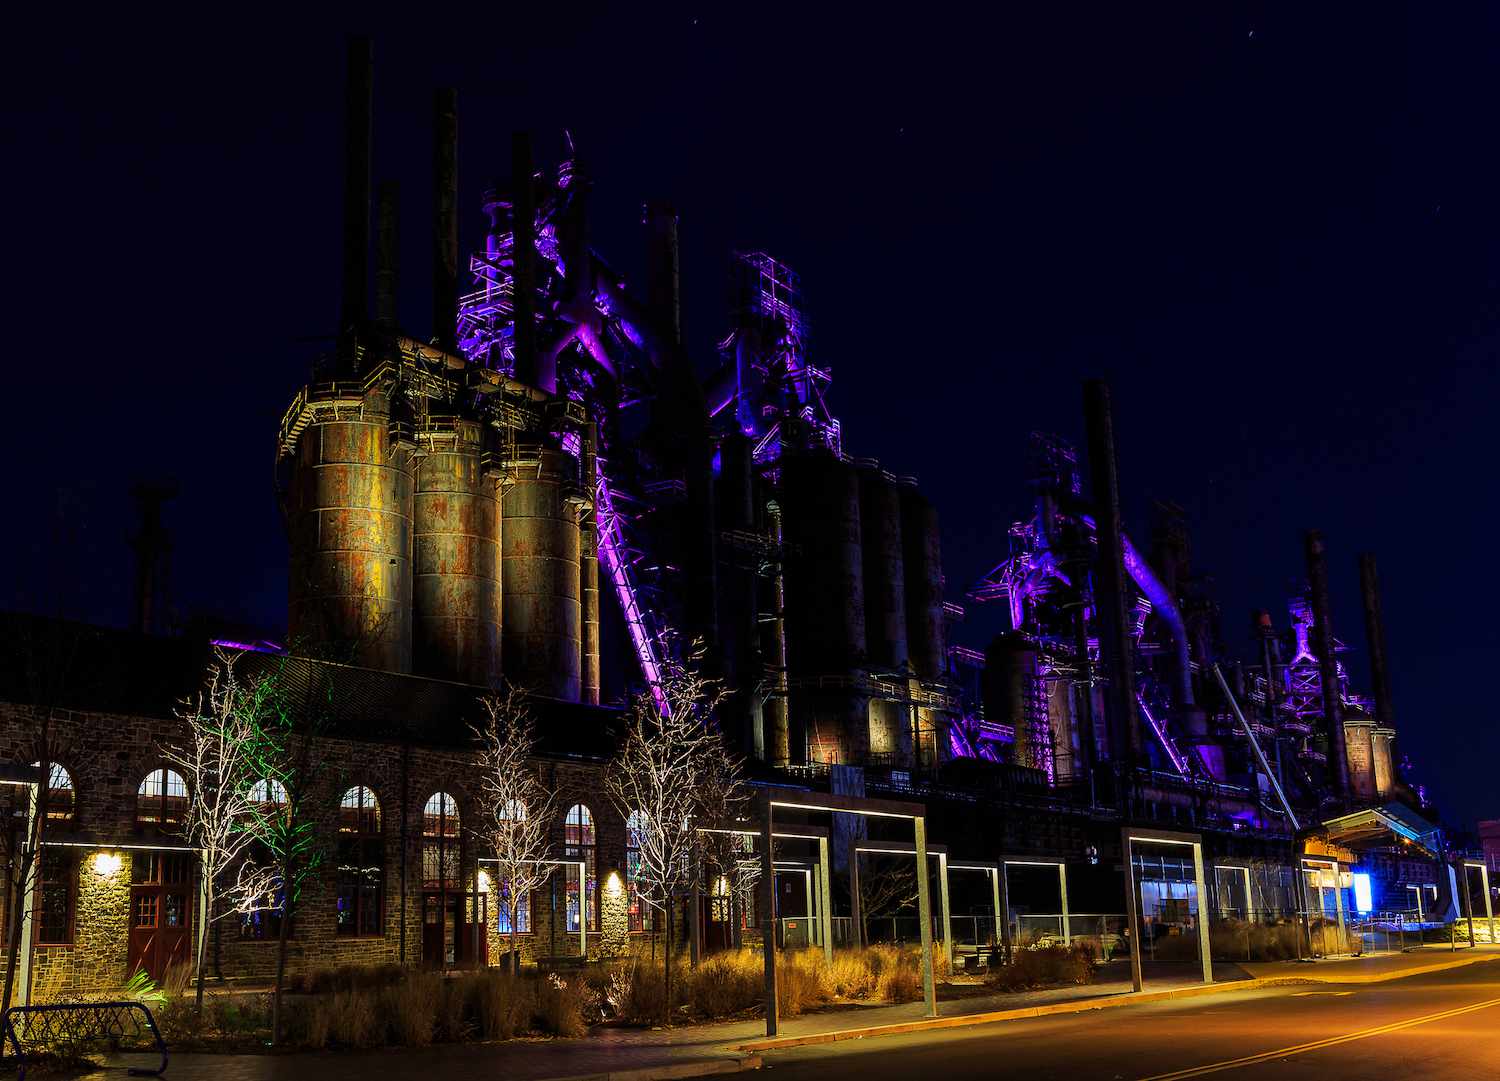 La entrada renovada de SteelStacks por la noche con los hornos iluminados en color púrpura